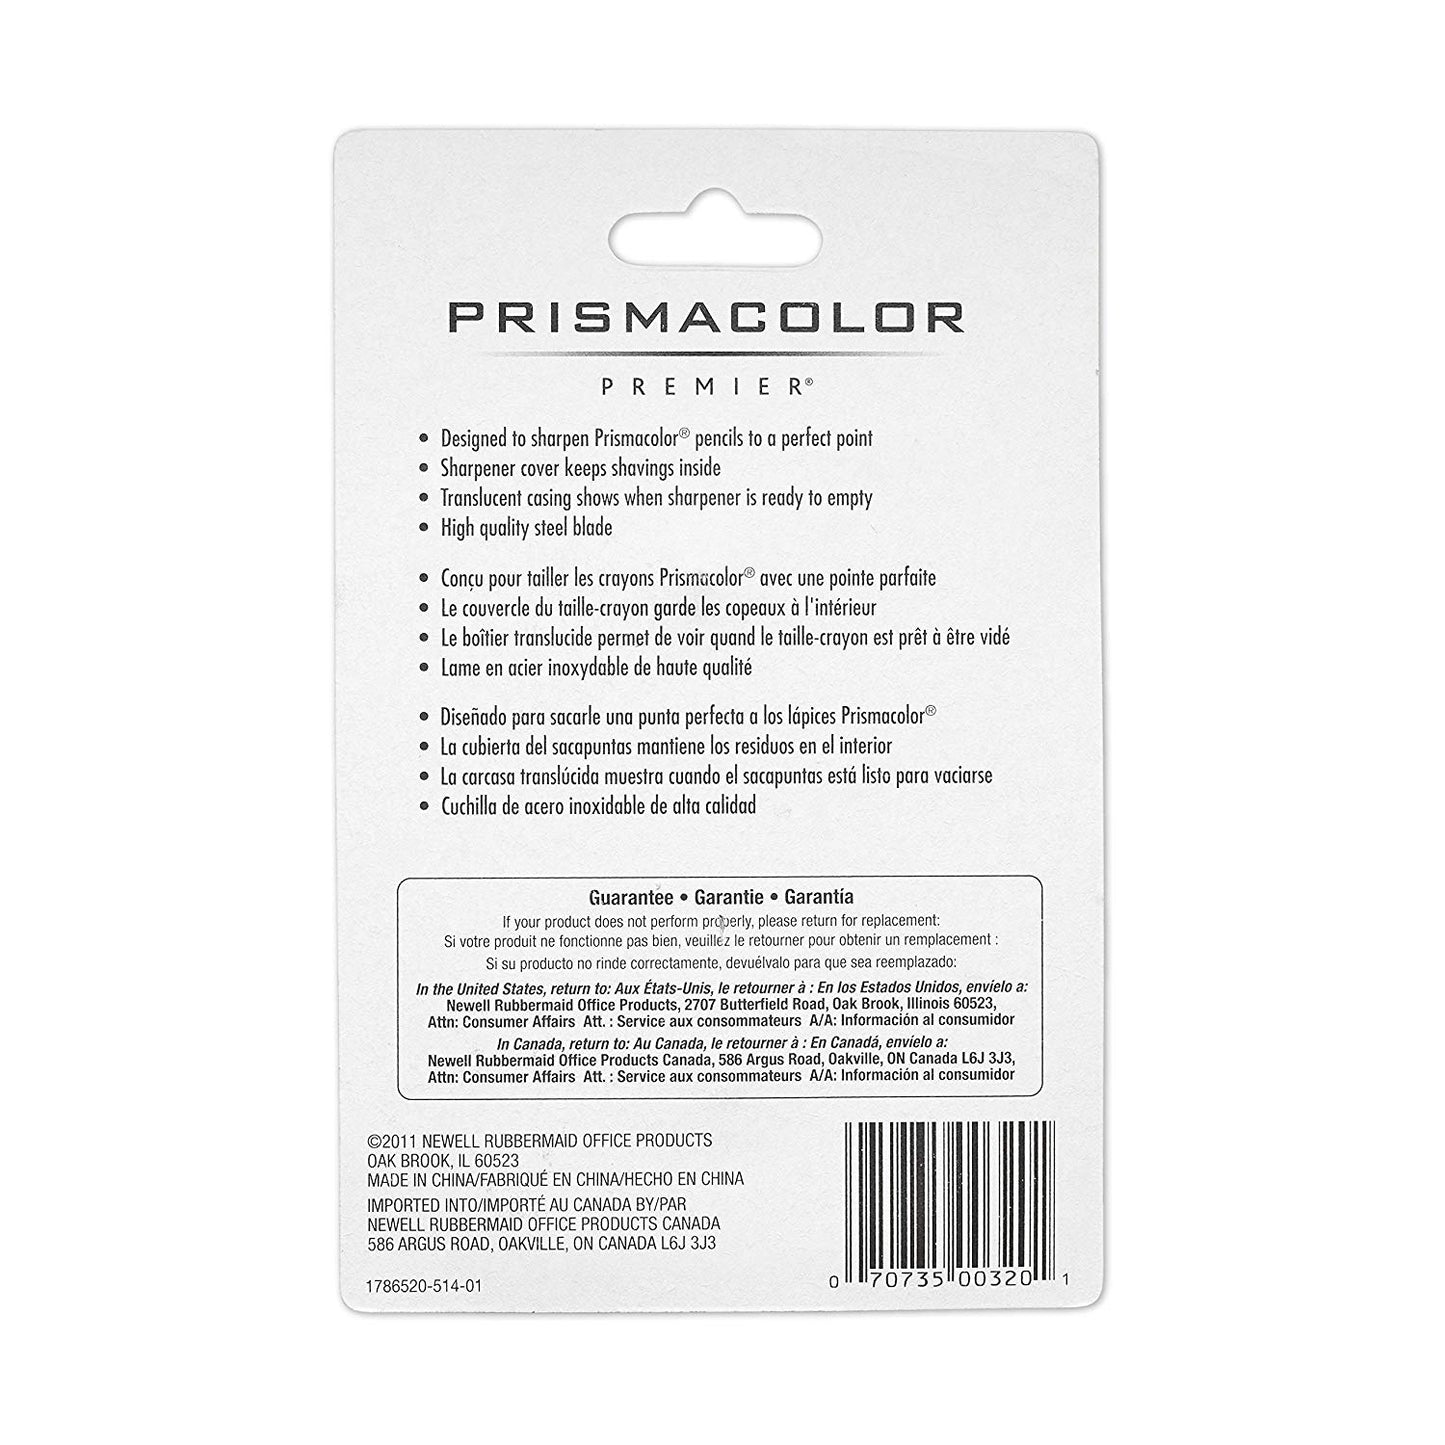 Prismacolor Premier Dual-Slot Sharpener